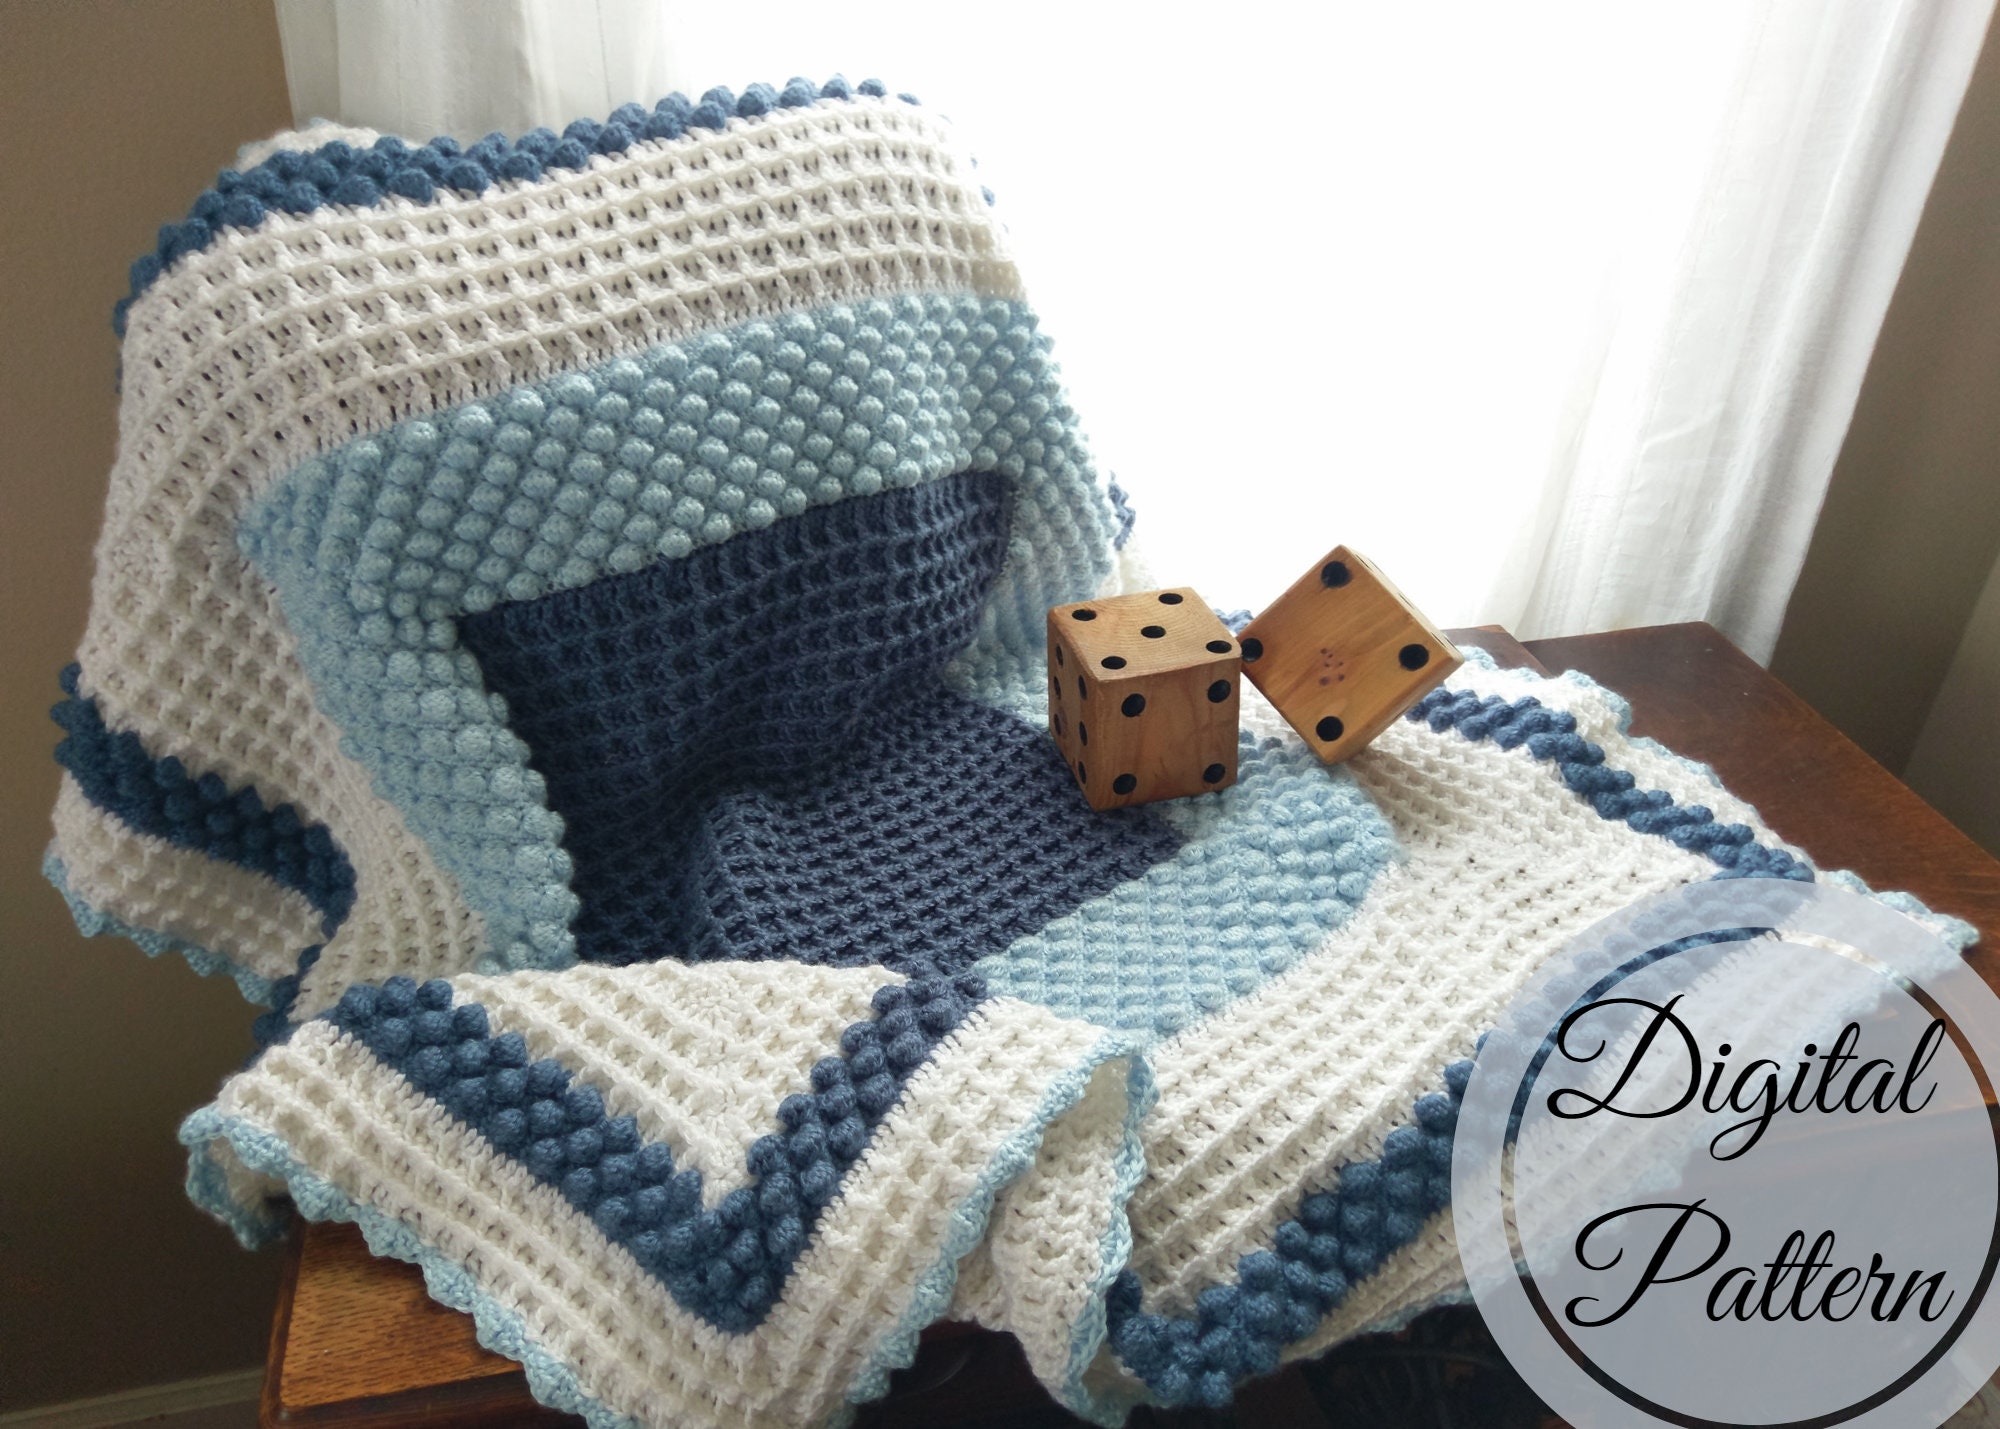 10 Beautiful Free Baby Boy Crochet Blanket Patterns - CrochetKim™